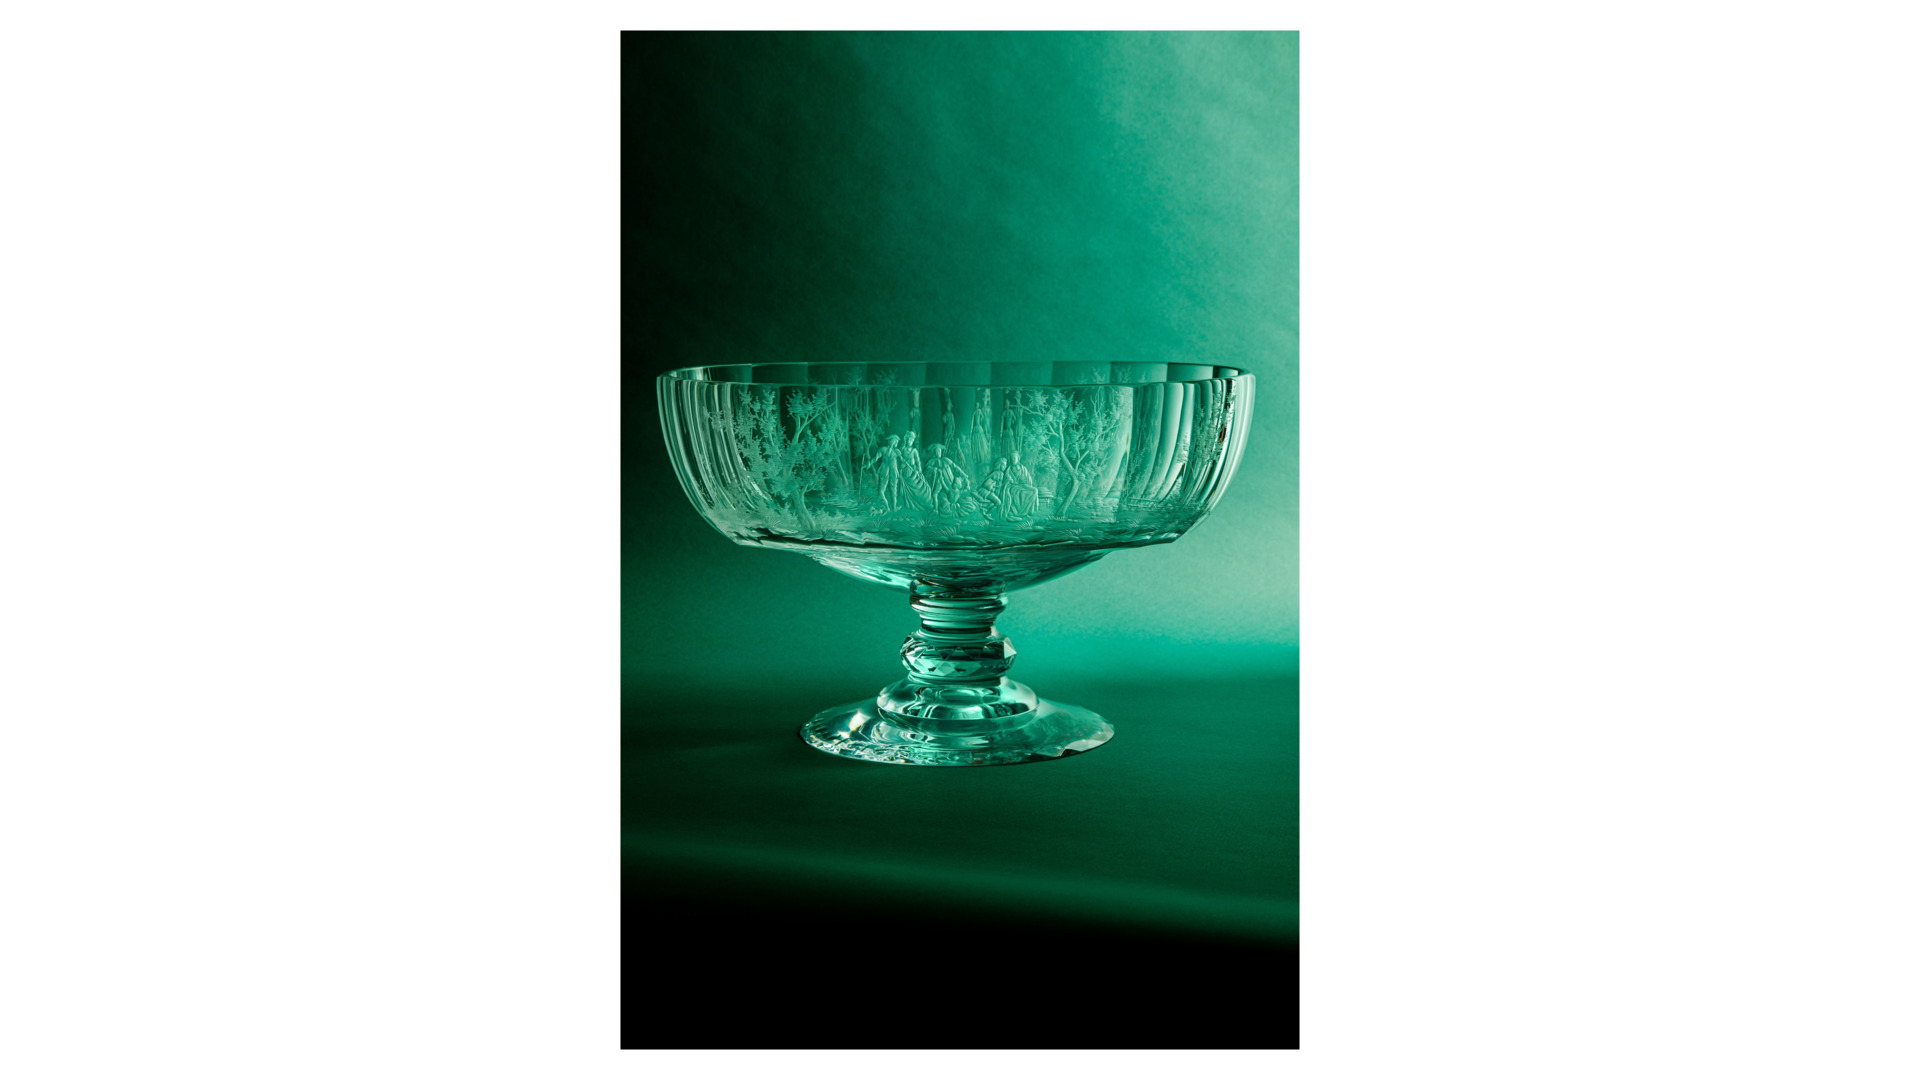 Чаша овальная для центра стола Moser Мария Терезия Бельведер 100 лет 42 см